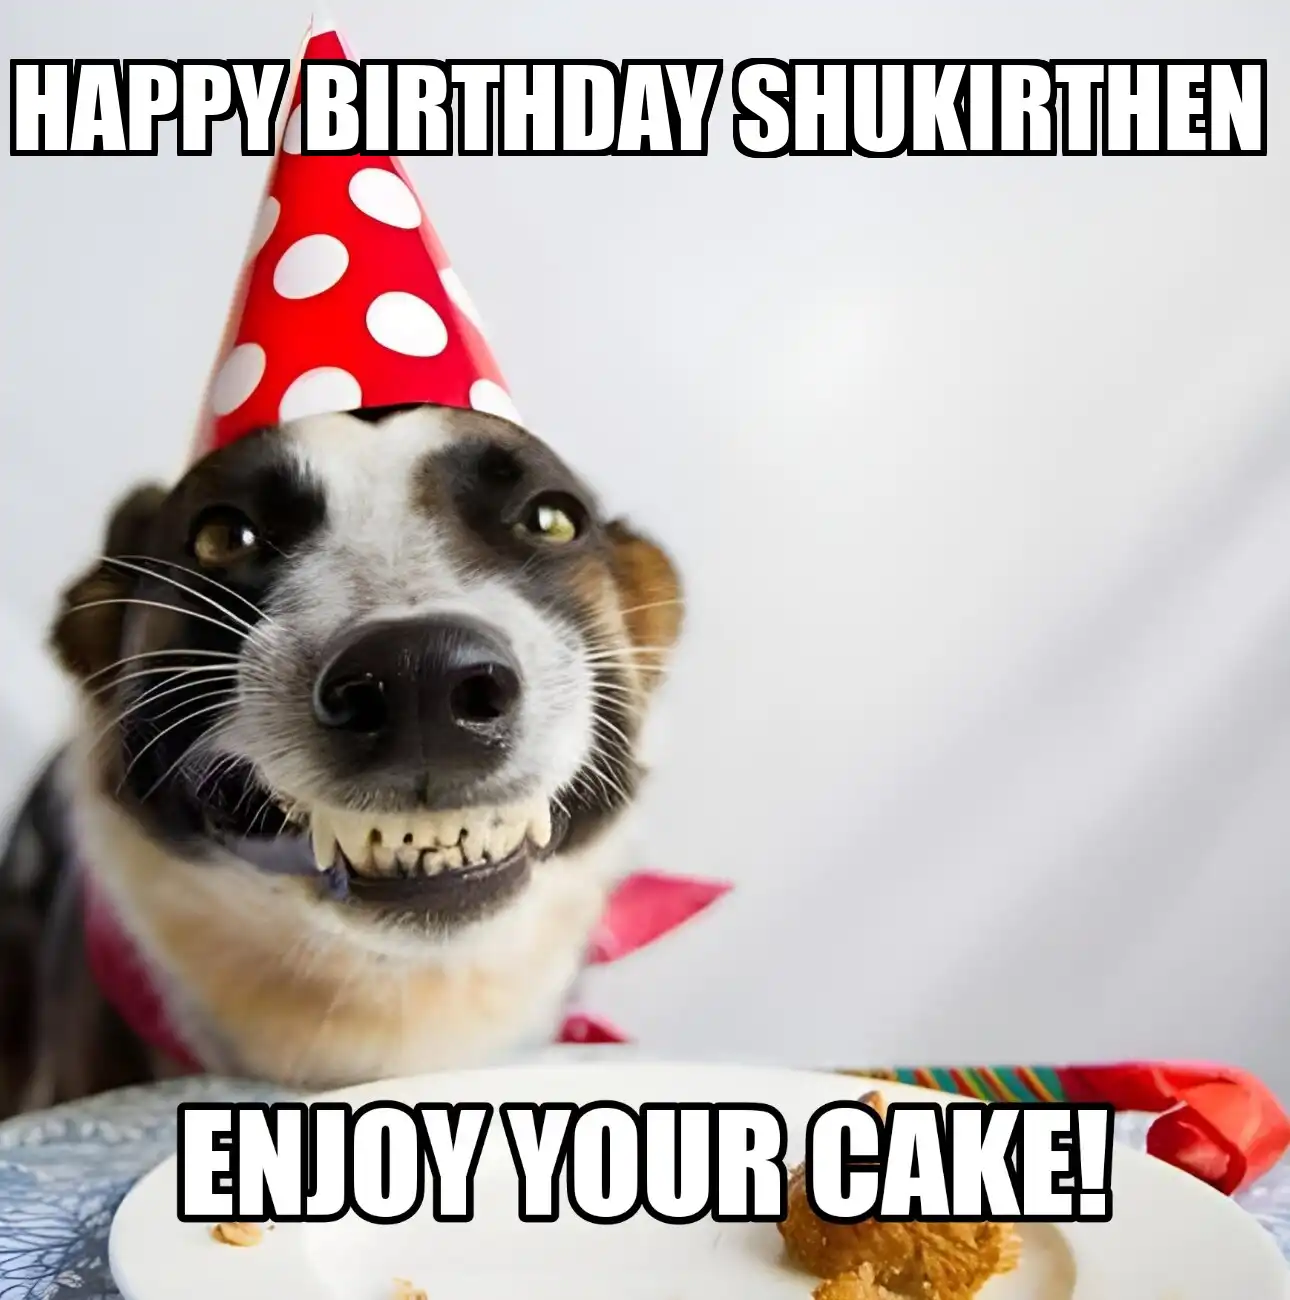 Happy Birthday Shukirthen Enjoy Your Cake Dog Meme